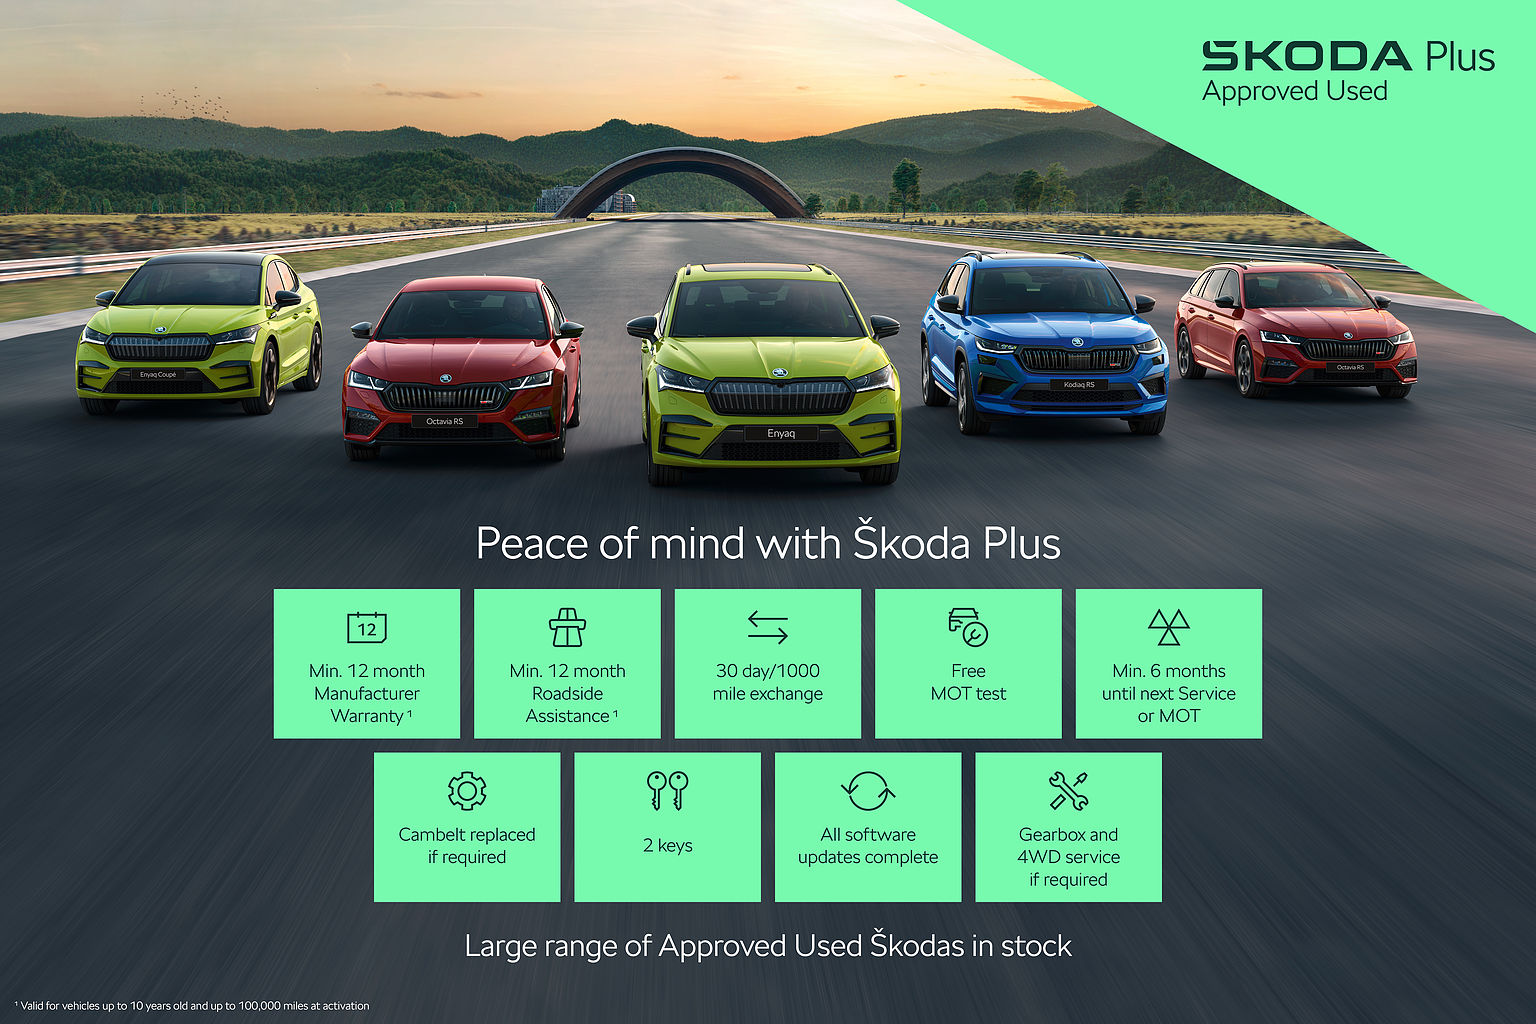 SKODA Kodiaq 2.0 TDI (150ps) 4X4 SE (5 Seats) SUV